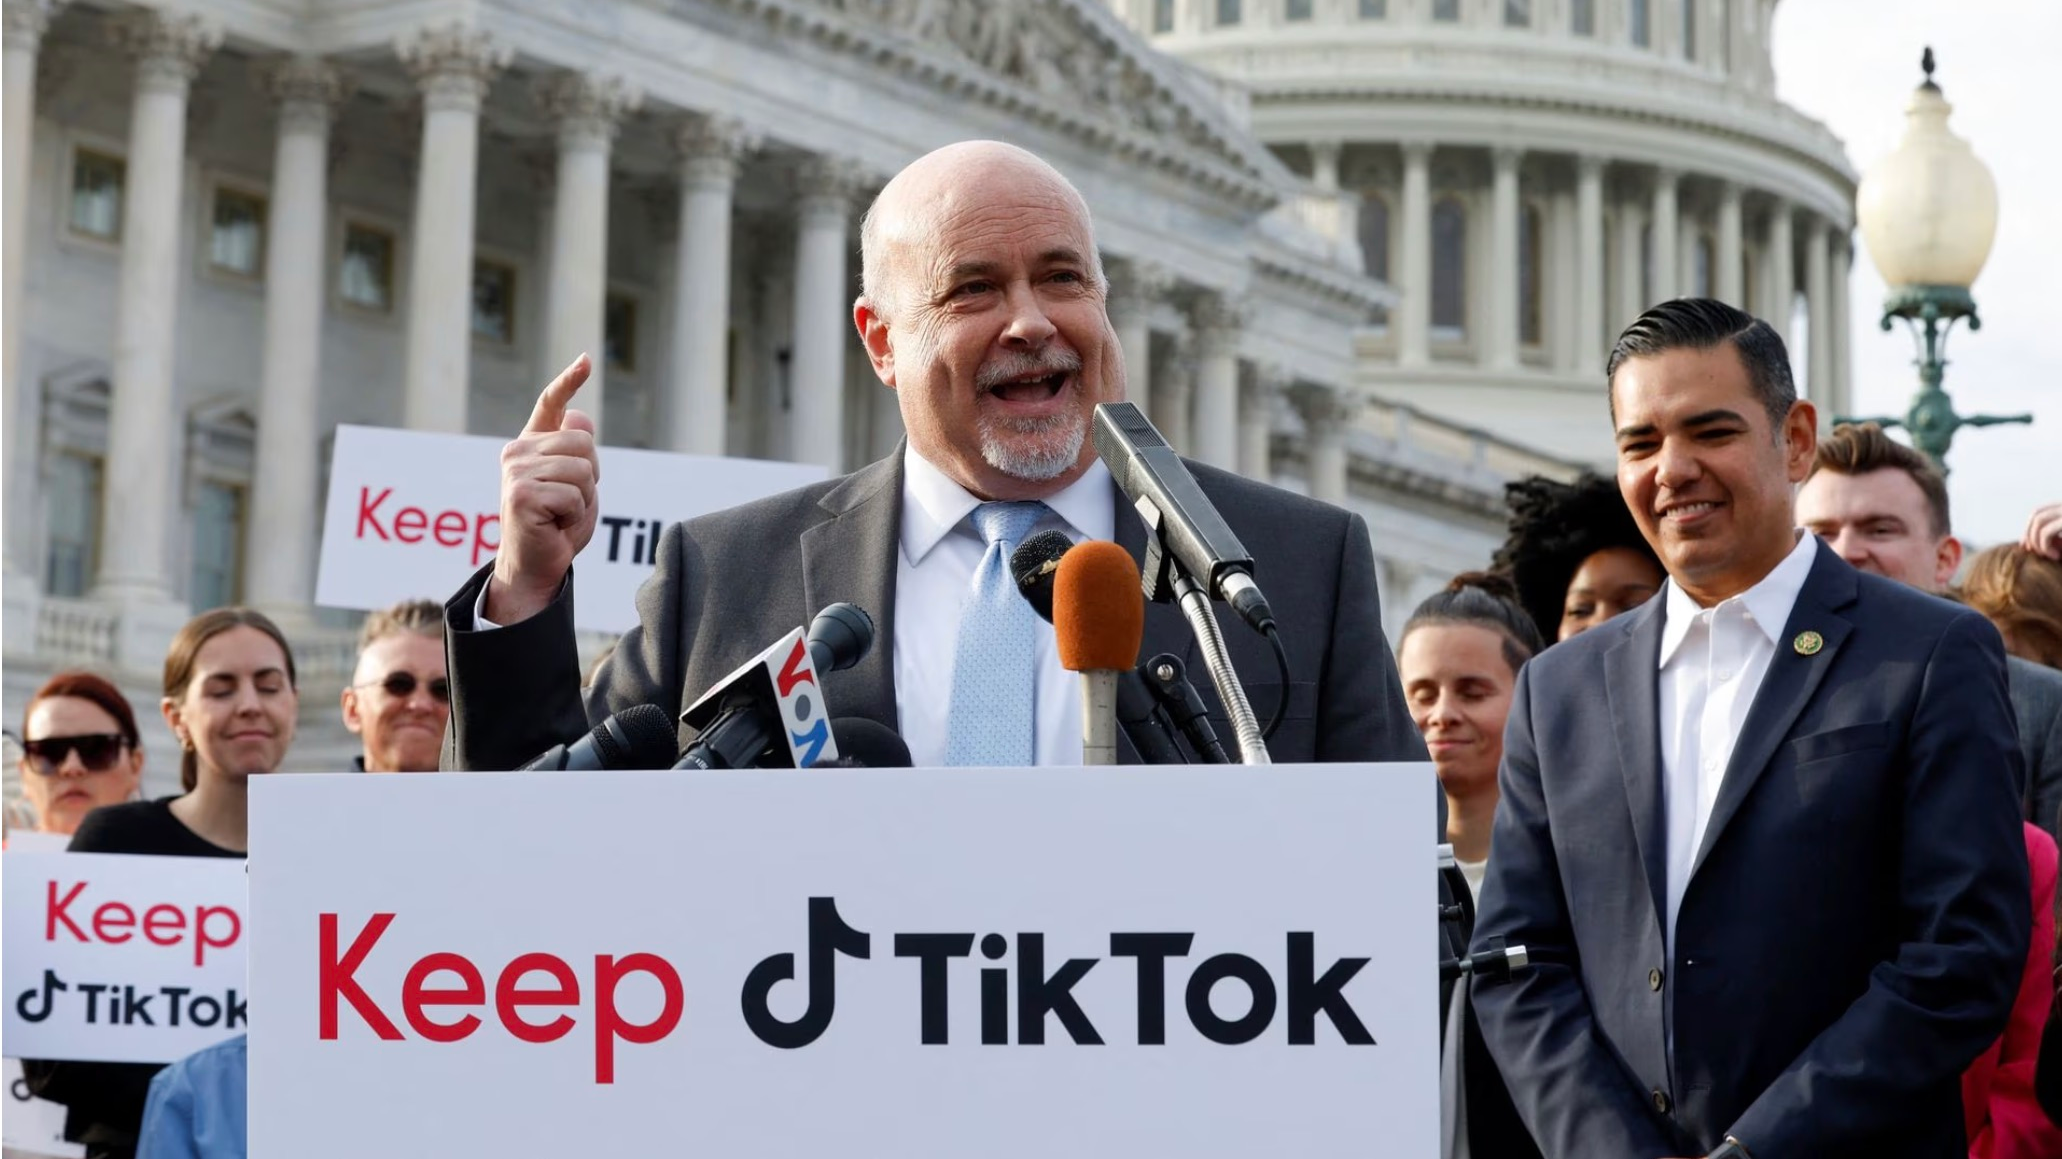 2023 年 3 月 22 日，在美国华盛顿美国国会大厦外的众议院三角区，美国代表马克·波坎 (Mark Pocan) 与 TikTok 创作者一起参加新闻发布会，反对禁止 TikTok。/路透社